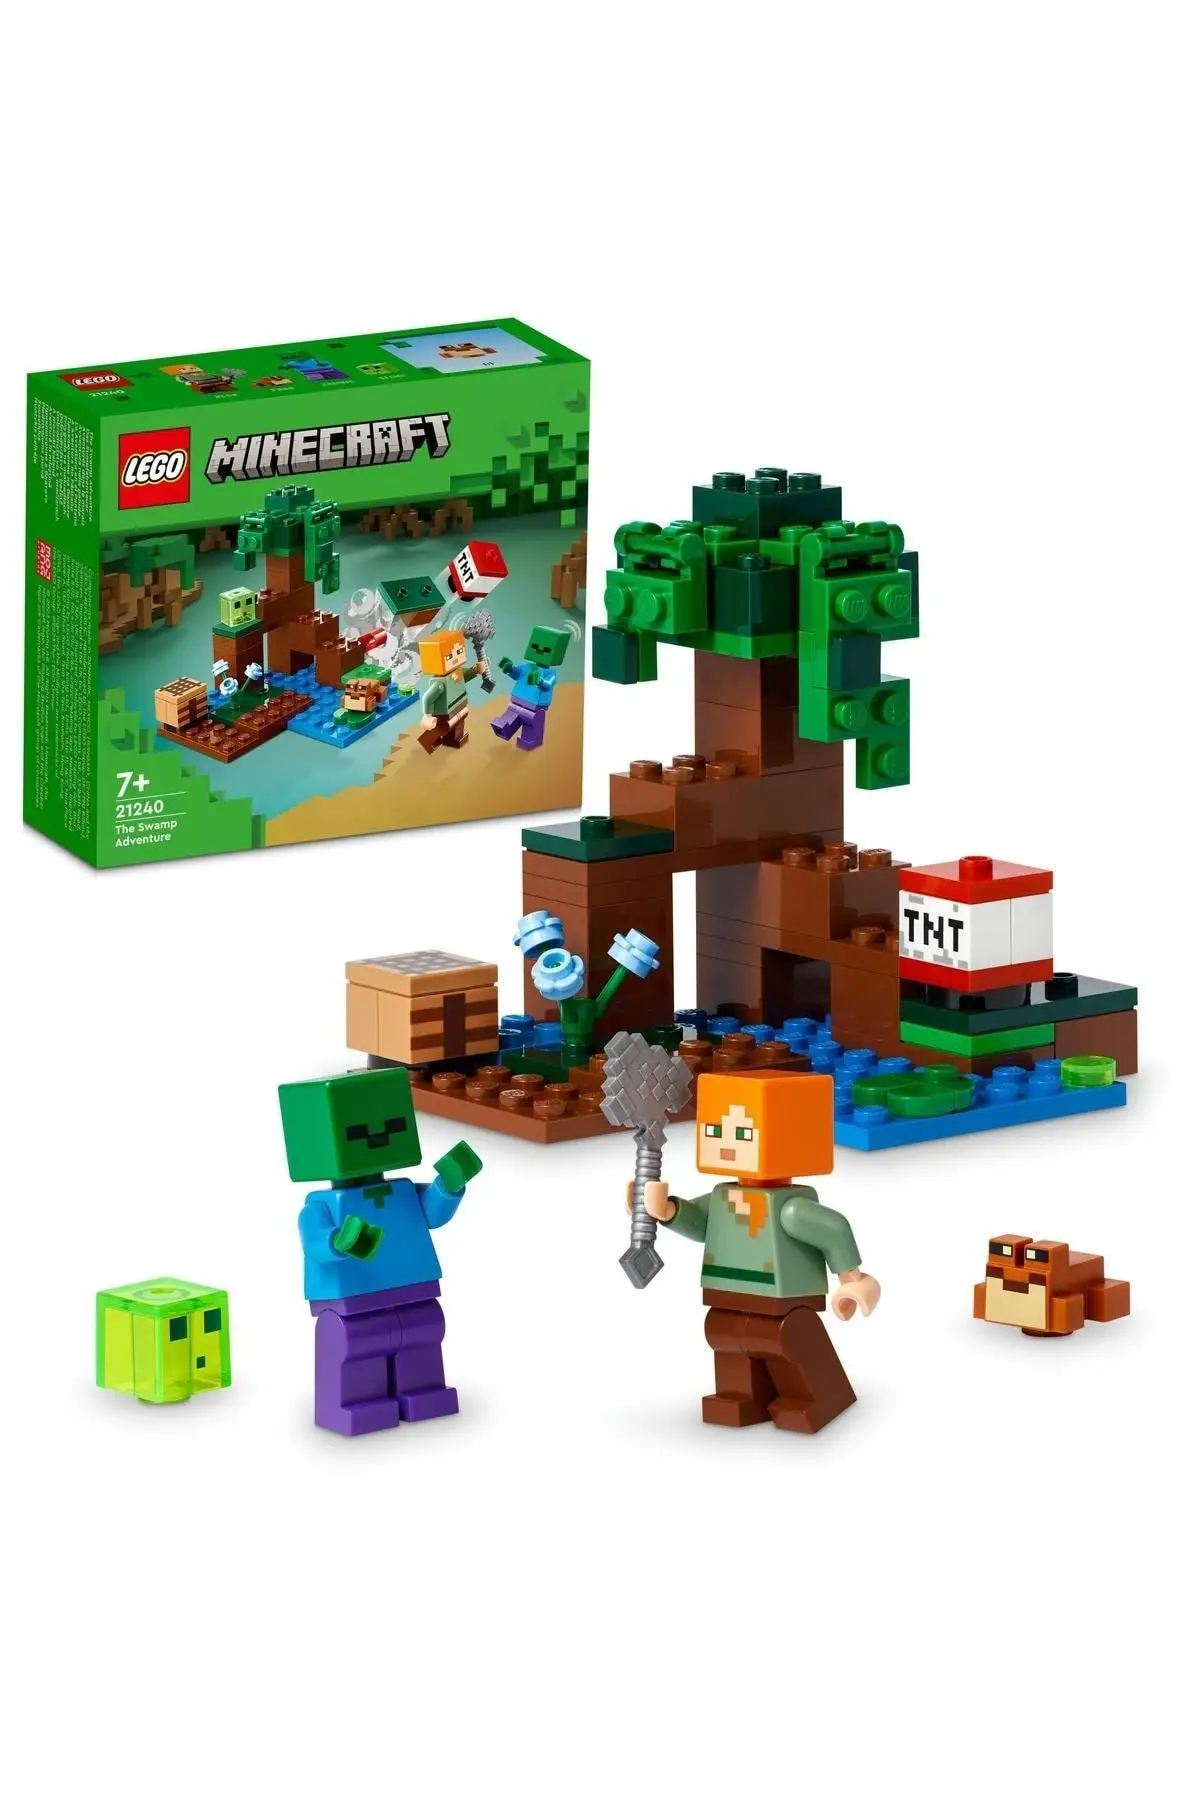 Оригинальный конструктор LEGO Minecraft Swamp Adventure 21240 - Игрушка для детей  в возрасте от 7 лет и старше (65 штук) | AliExpress